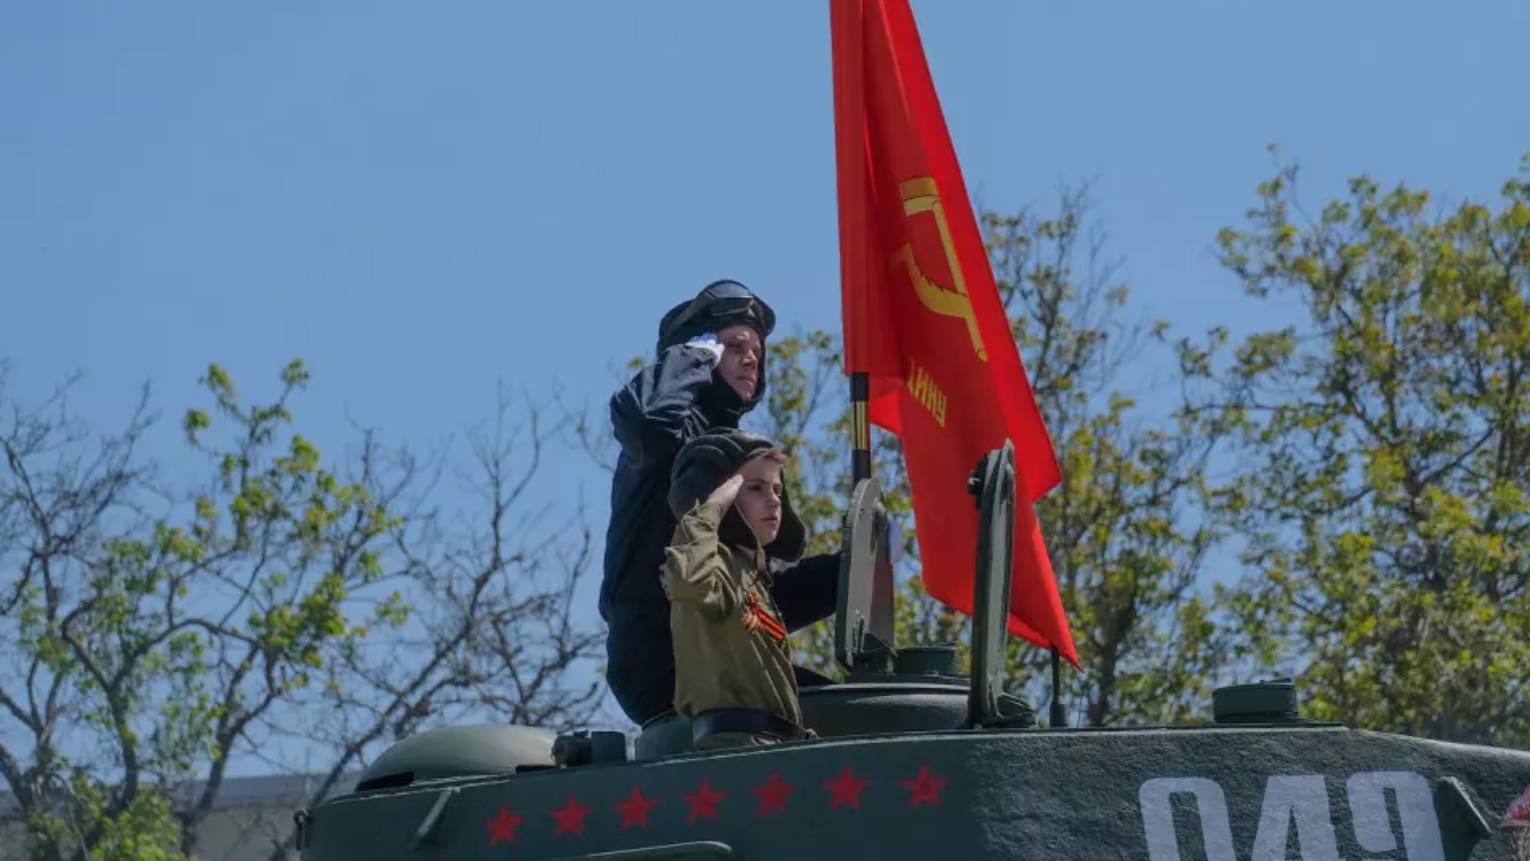 Путин исполнил мечту 11-летнего мальчика из Пятигорска о поездке на танке Т-34